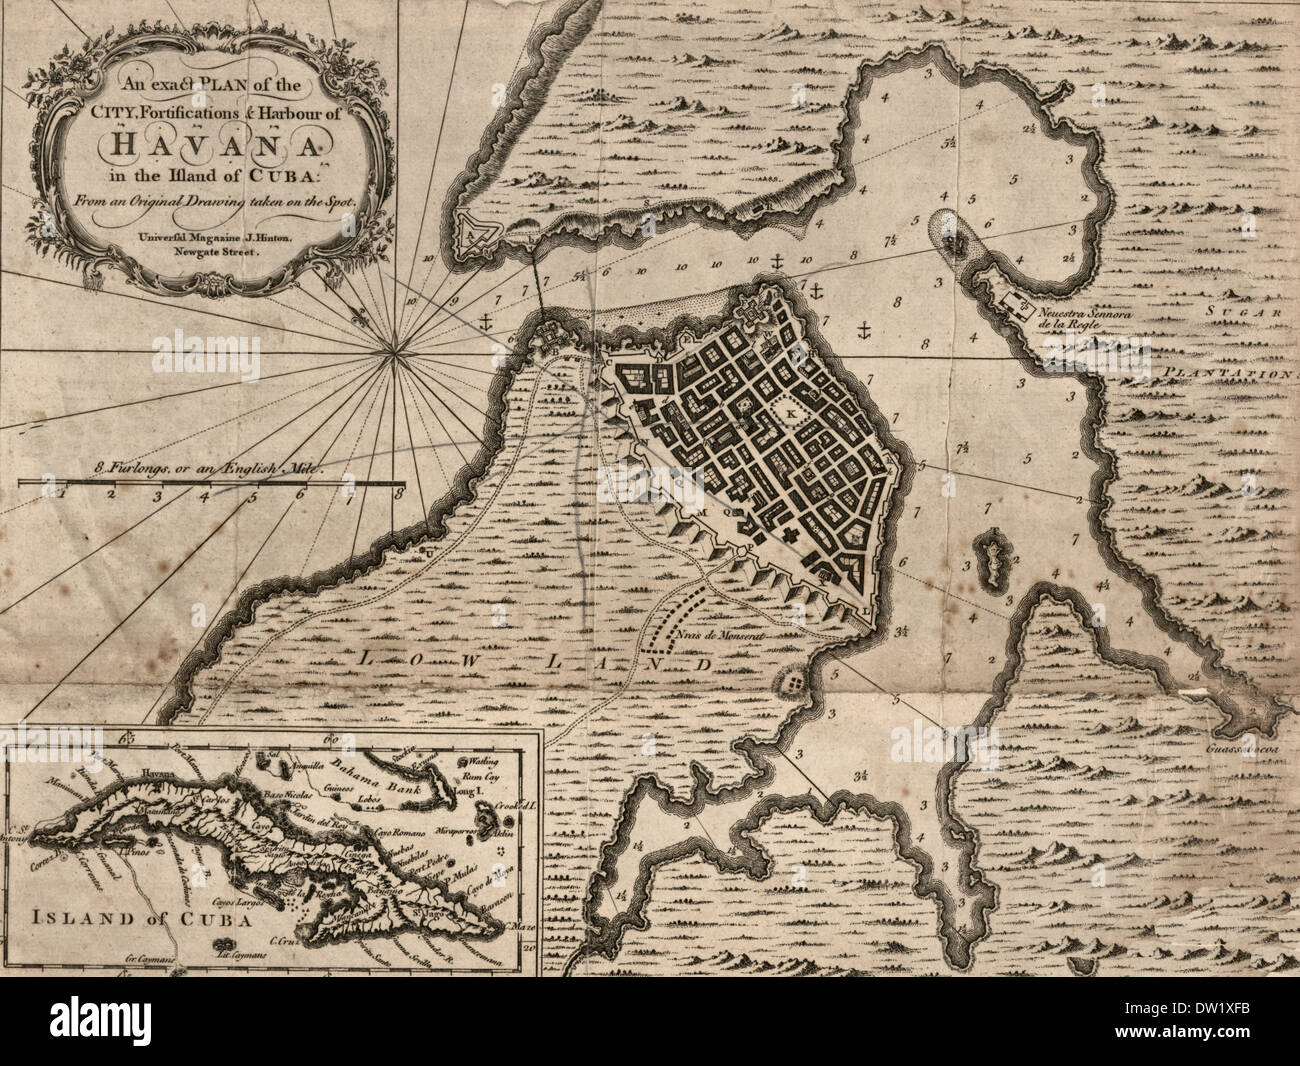 Un plan précis de la ville, les fortifications du port et de La Havane à l'île de Cuba - 1762 Banque D'Images